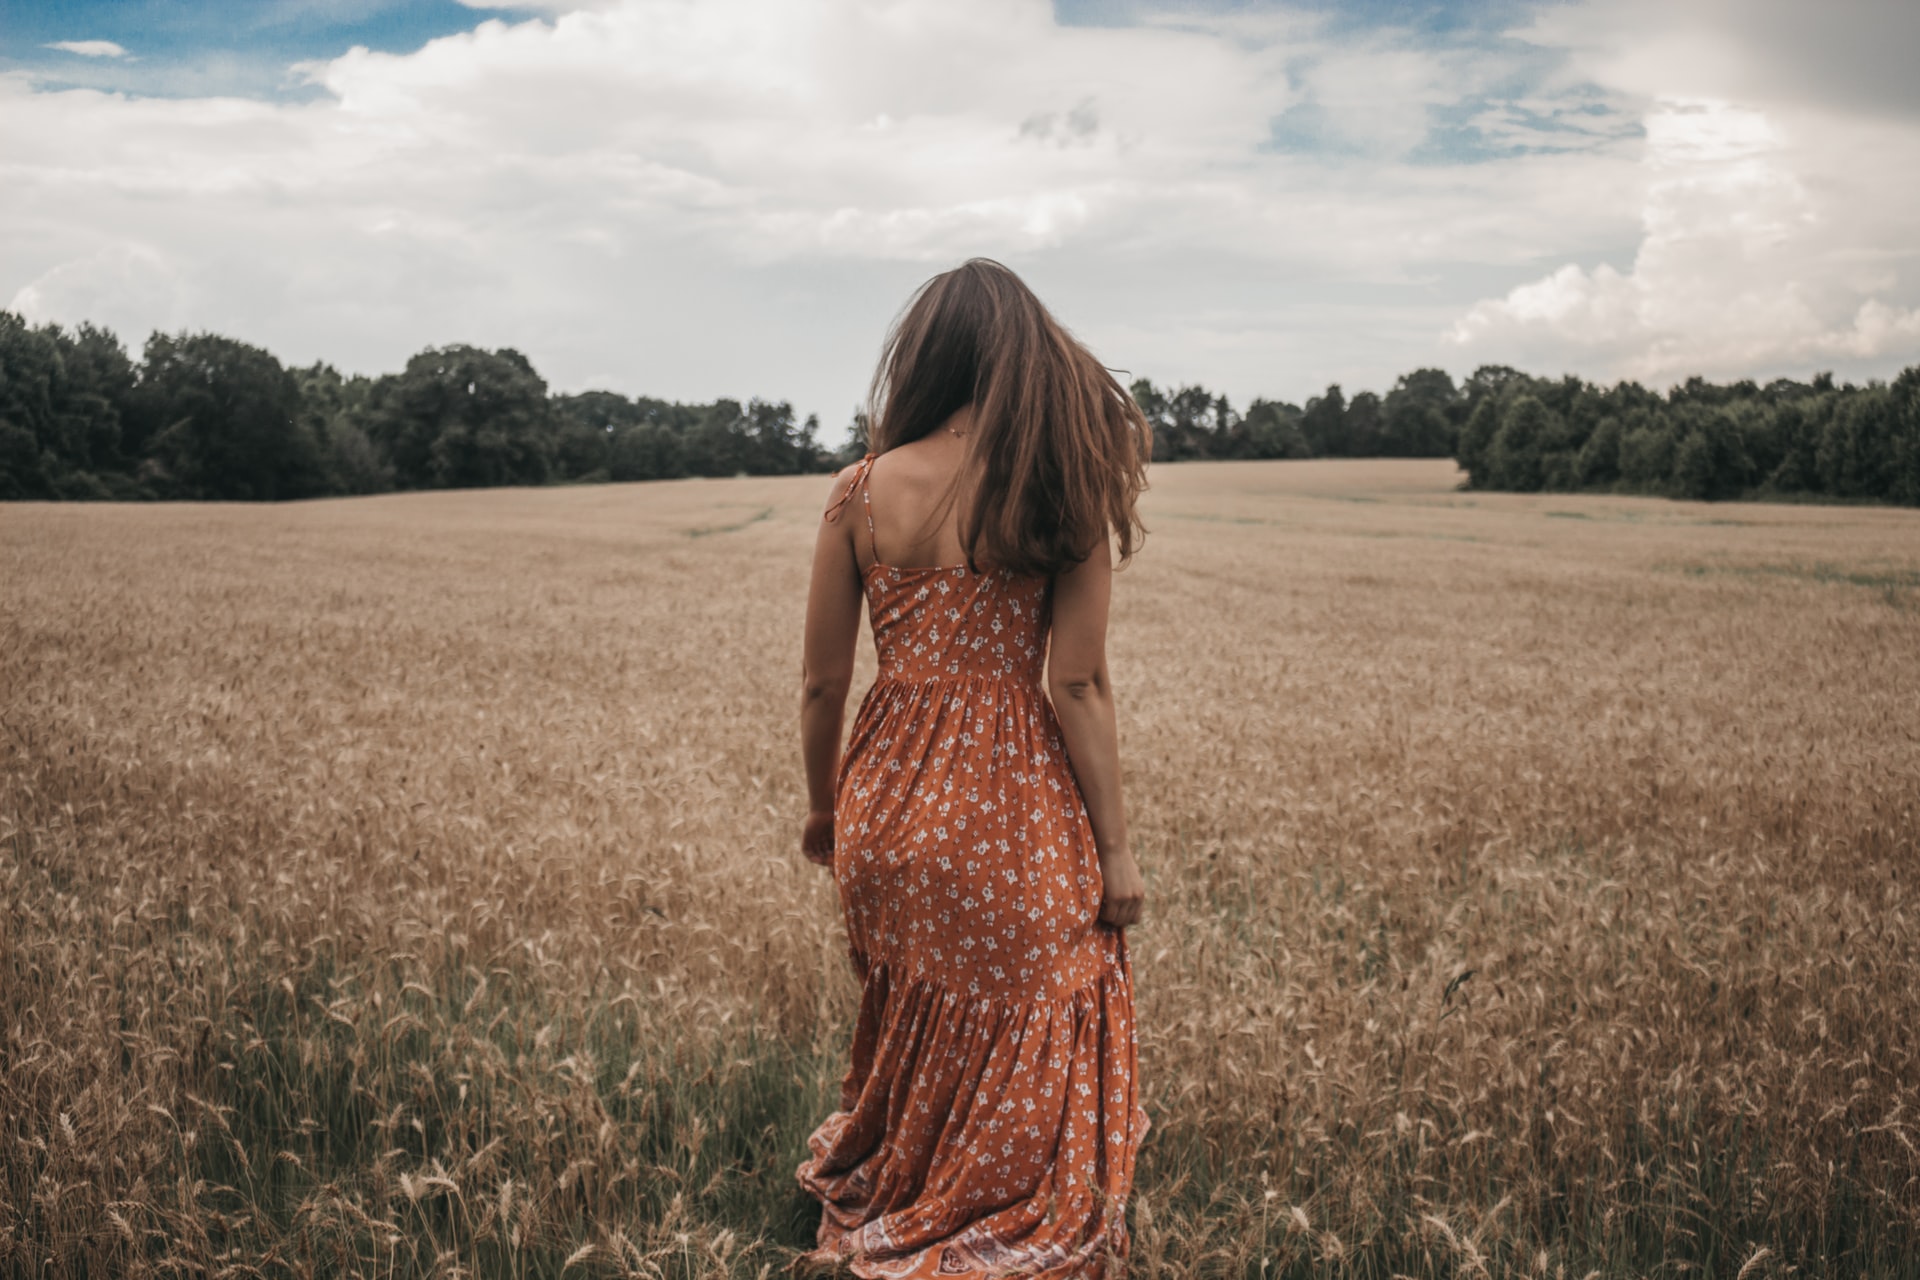 Pretty girl walking away in a field